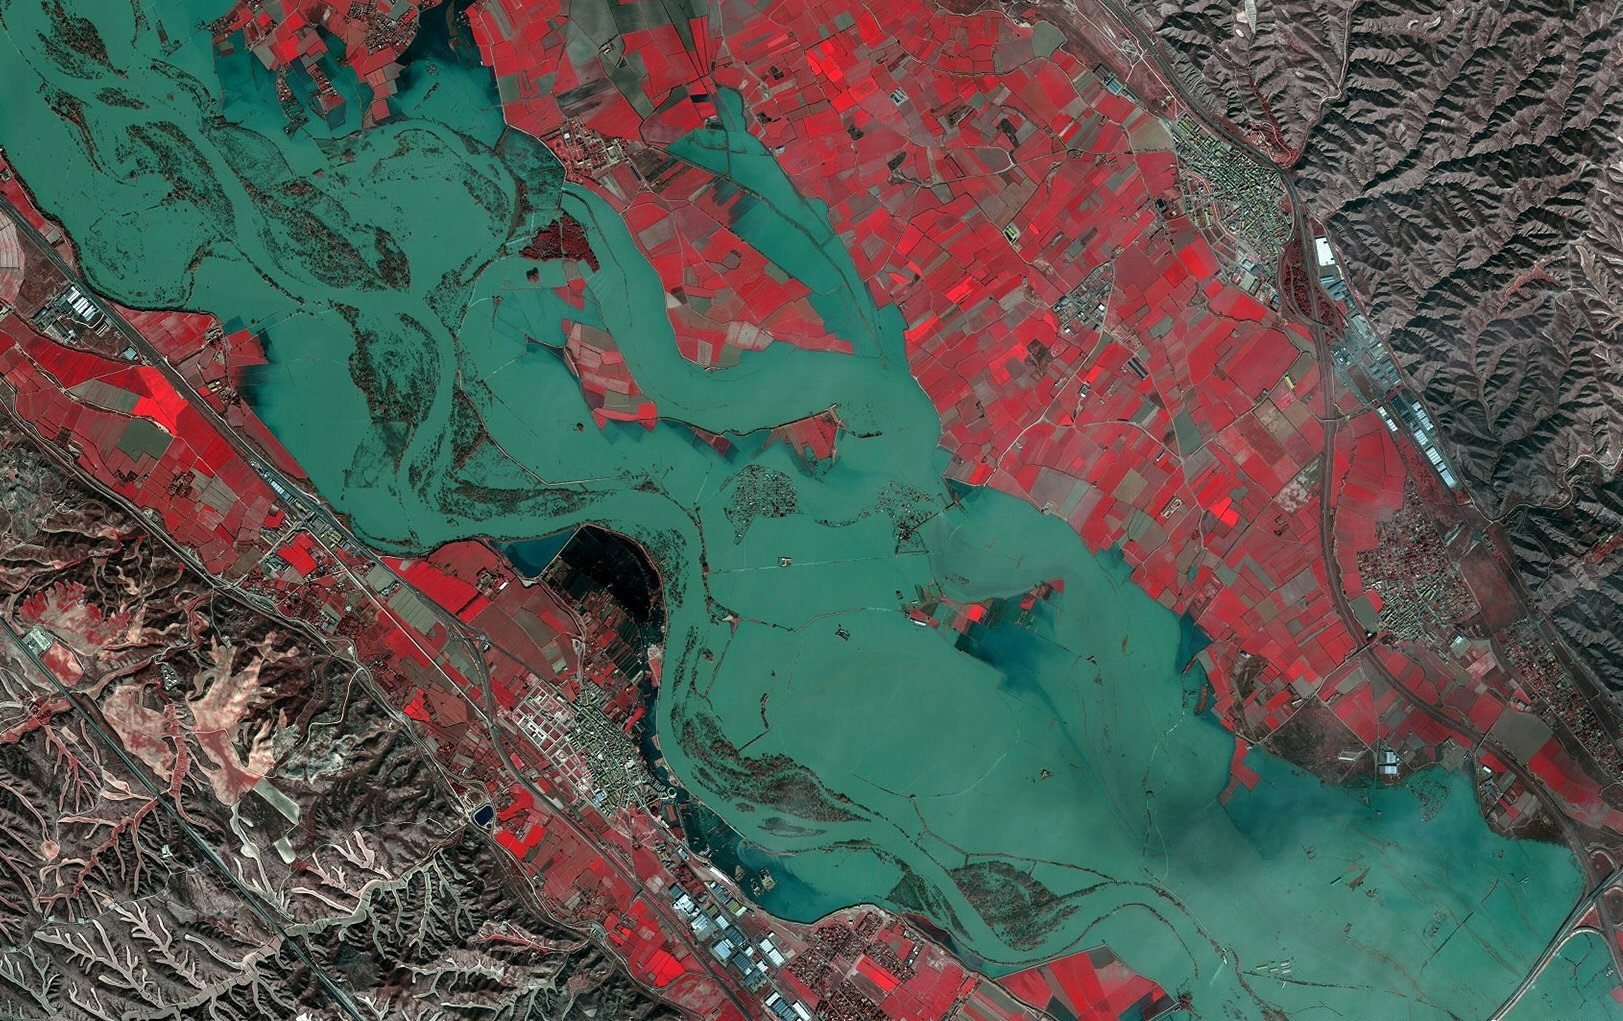 Imagen de la crecida del Ebro cerca de Zaragoza captada por el satélite de Elecnor Deimos, tomada el 2 de marzo.